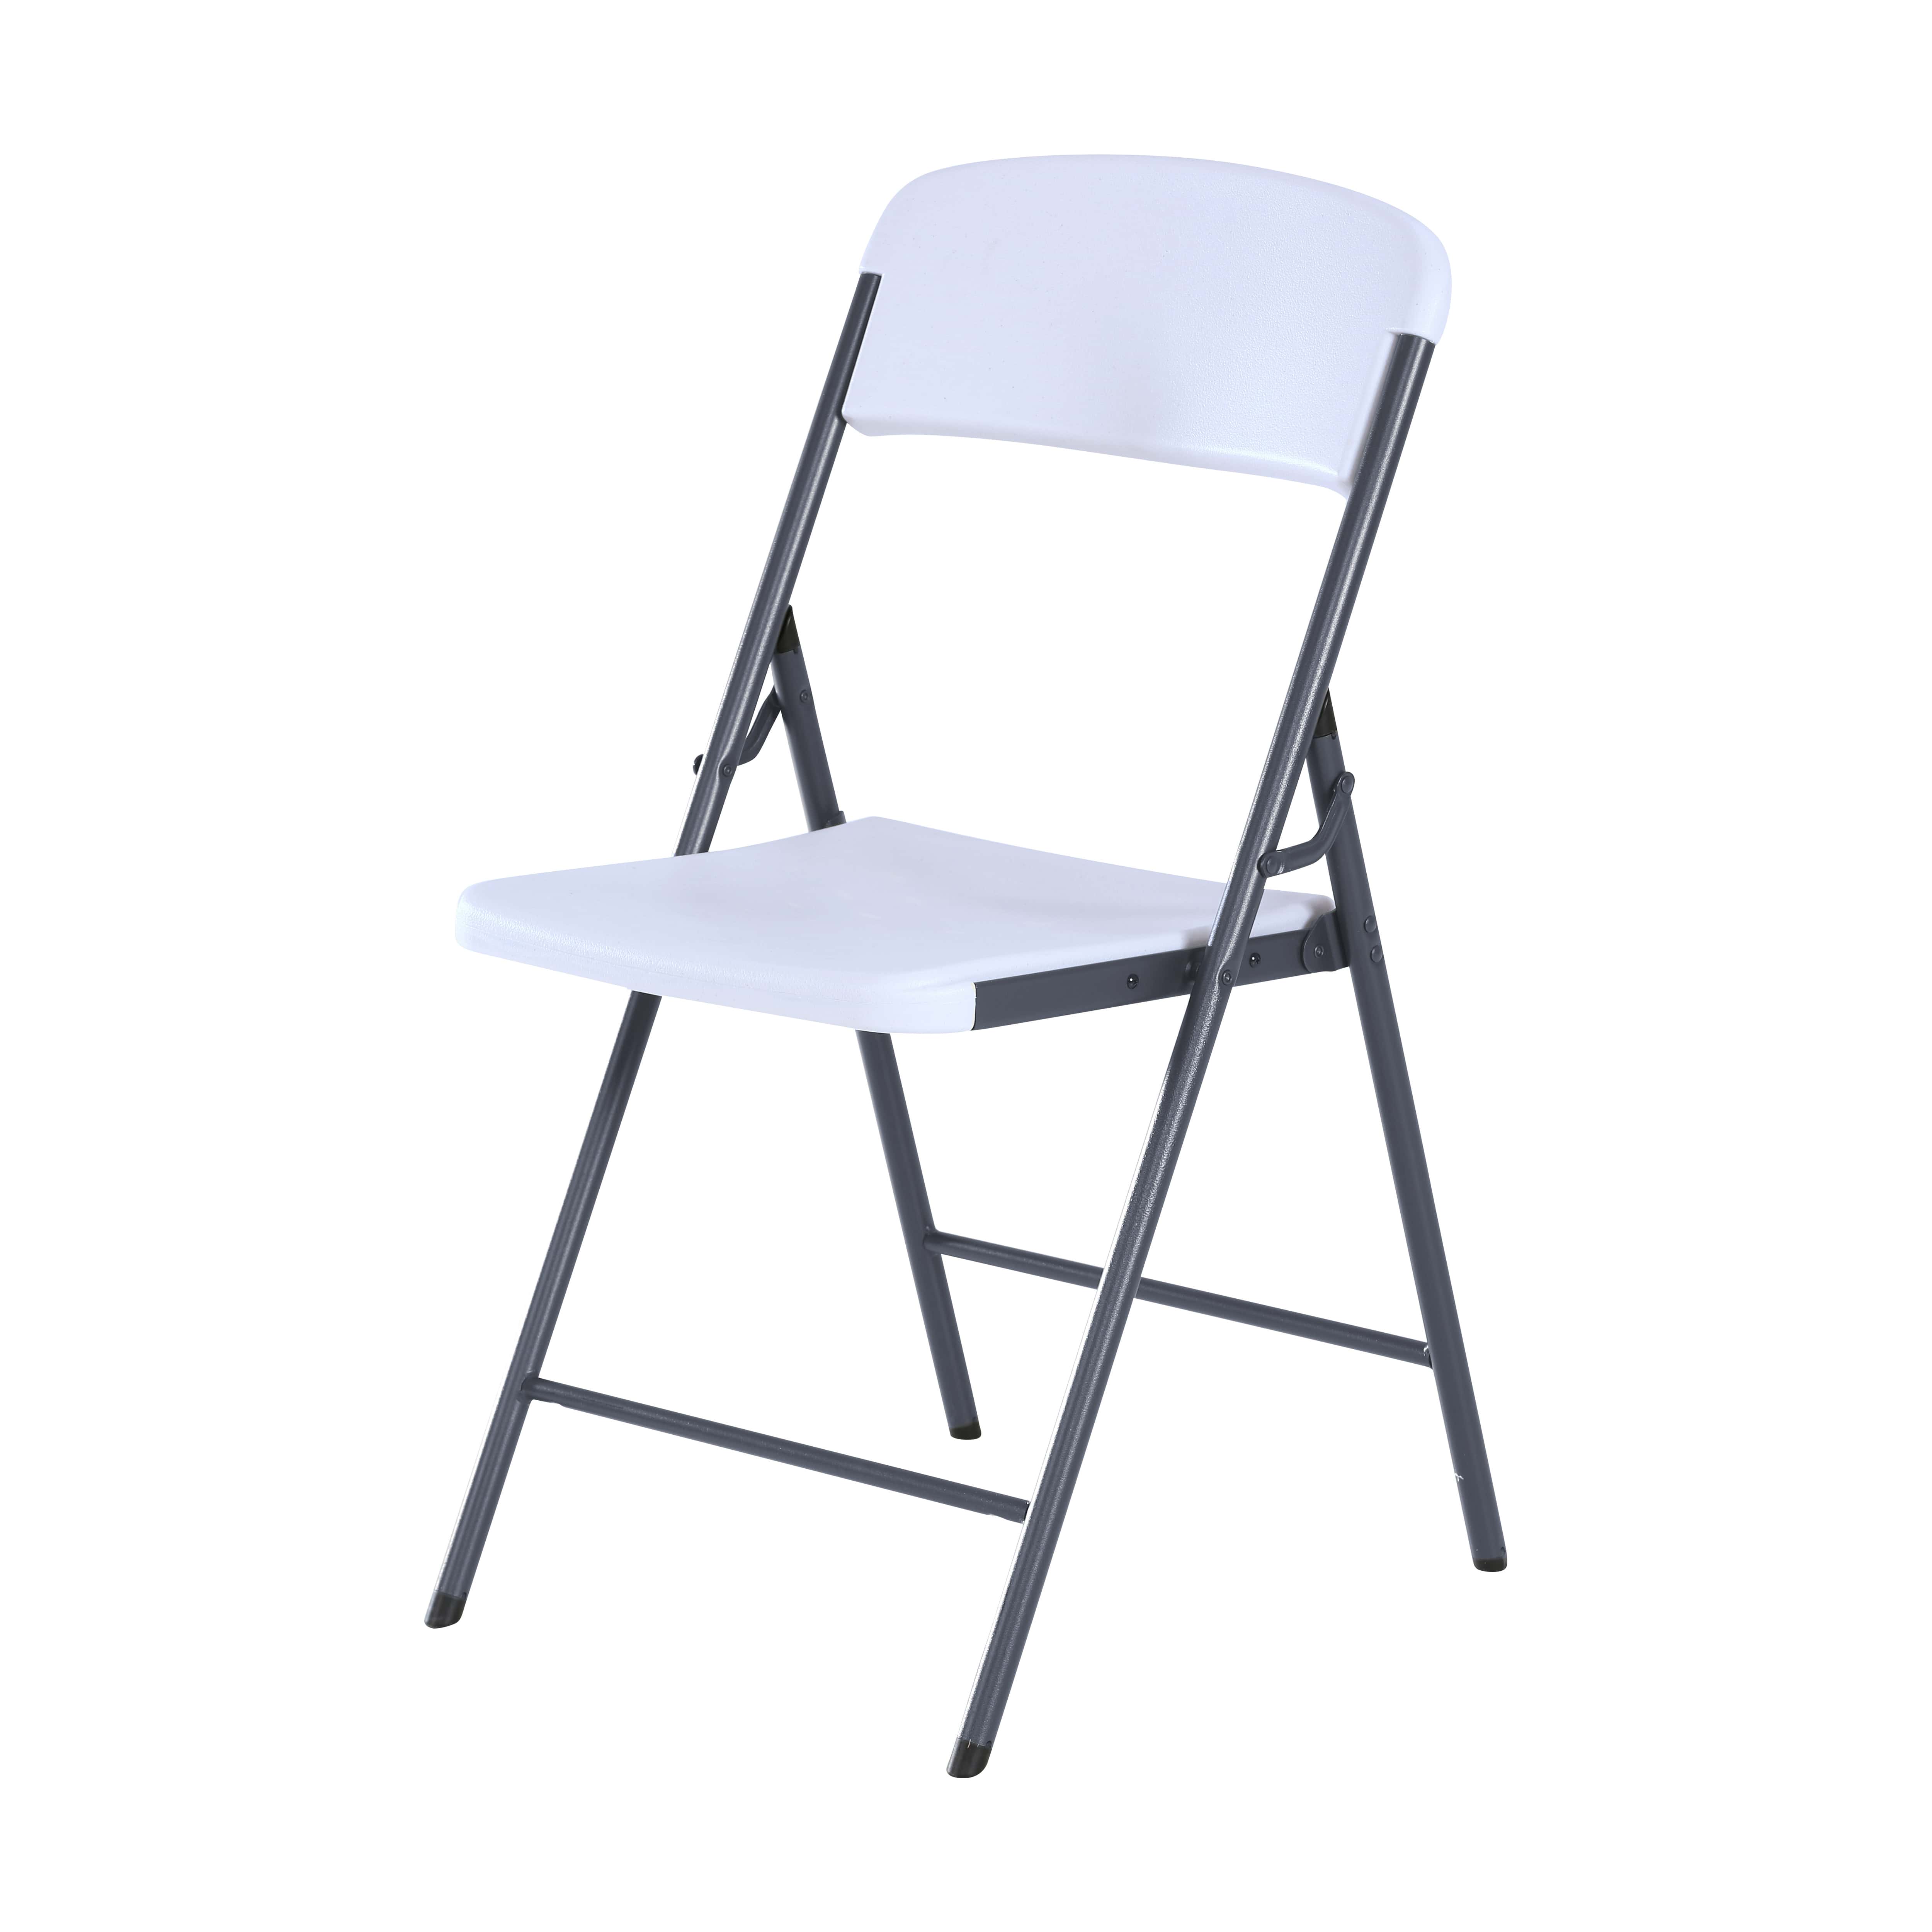 Chaise pliante contemporaine blanche